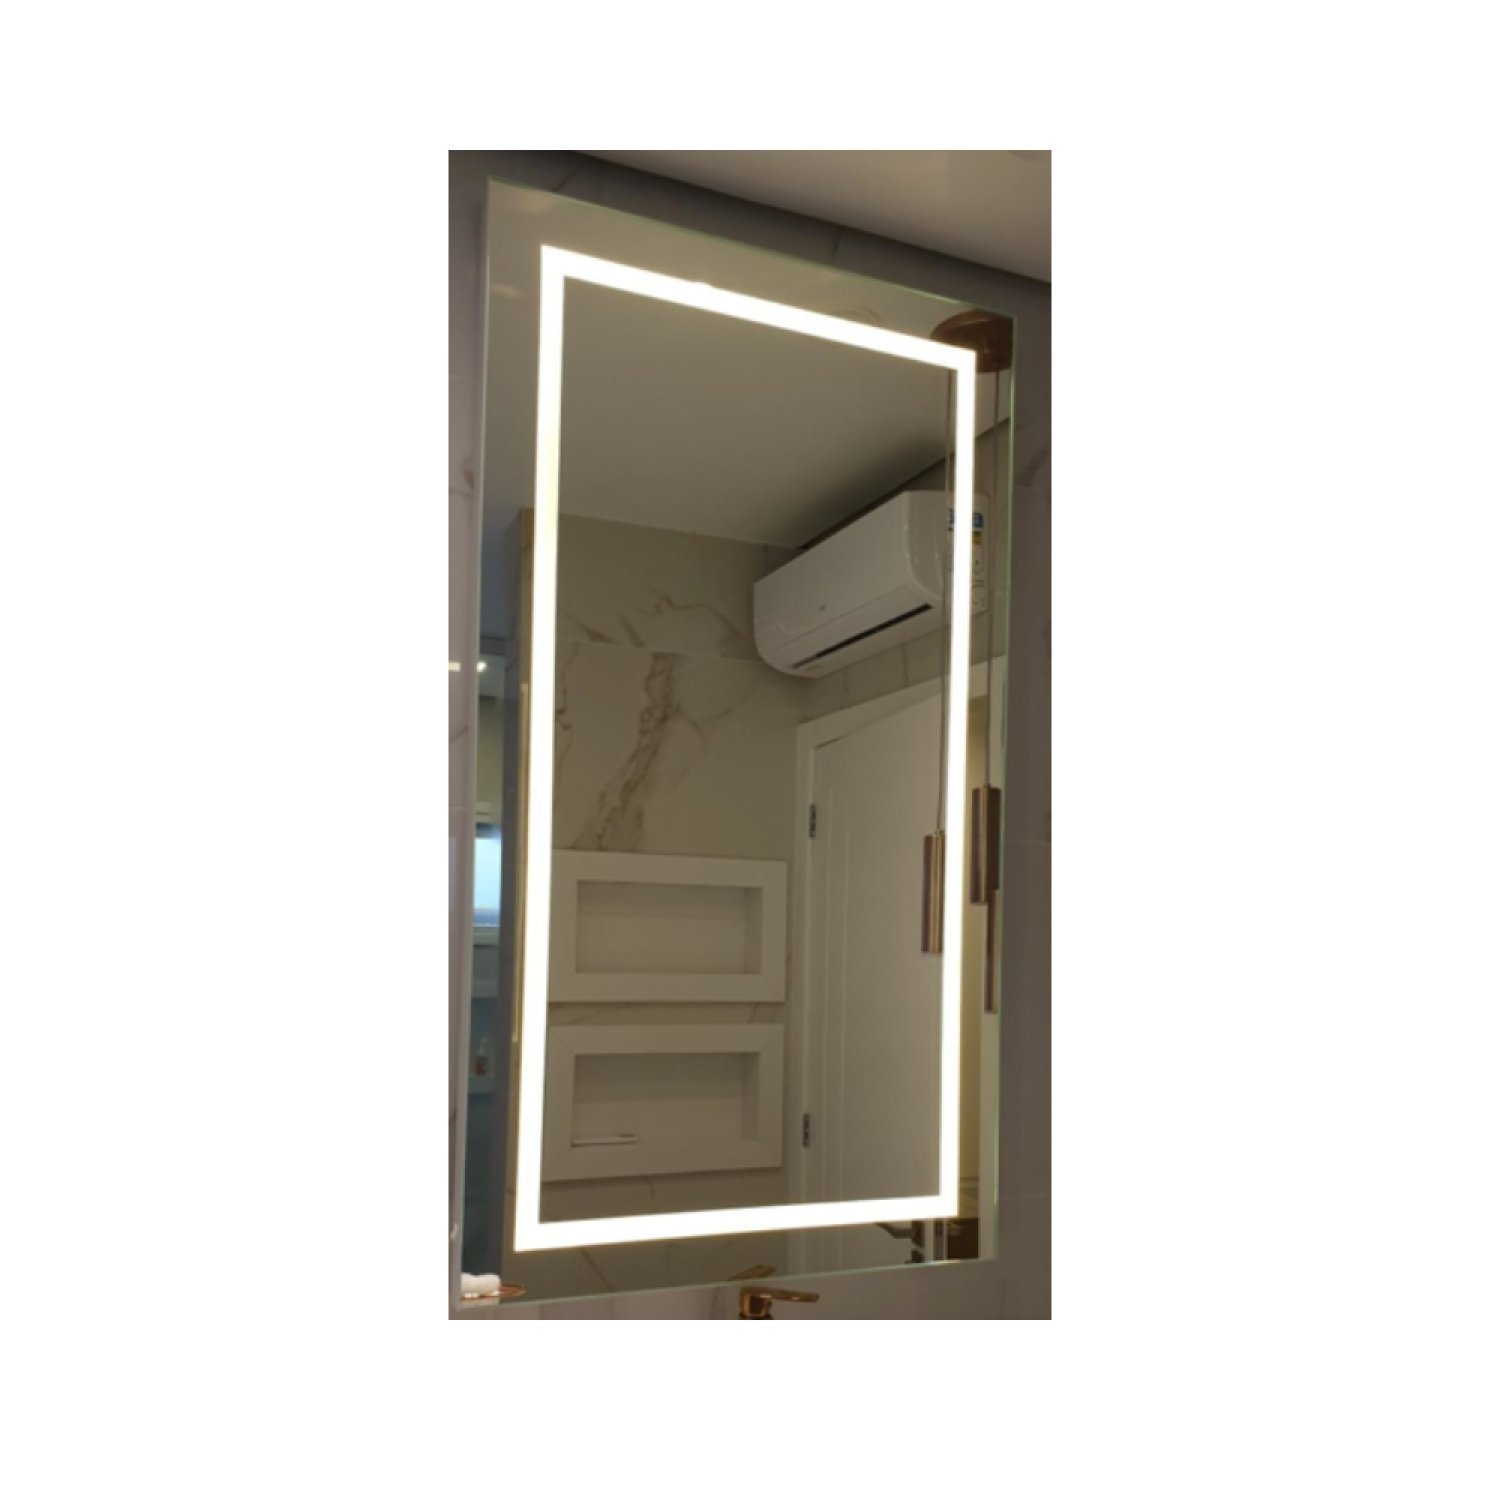 Espelho Camarim 90x60cm Retro Iluminado Led - 4